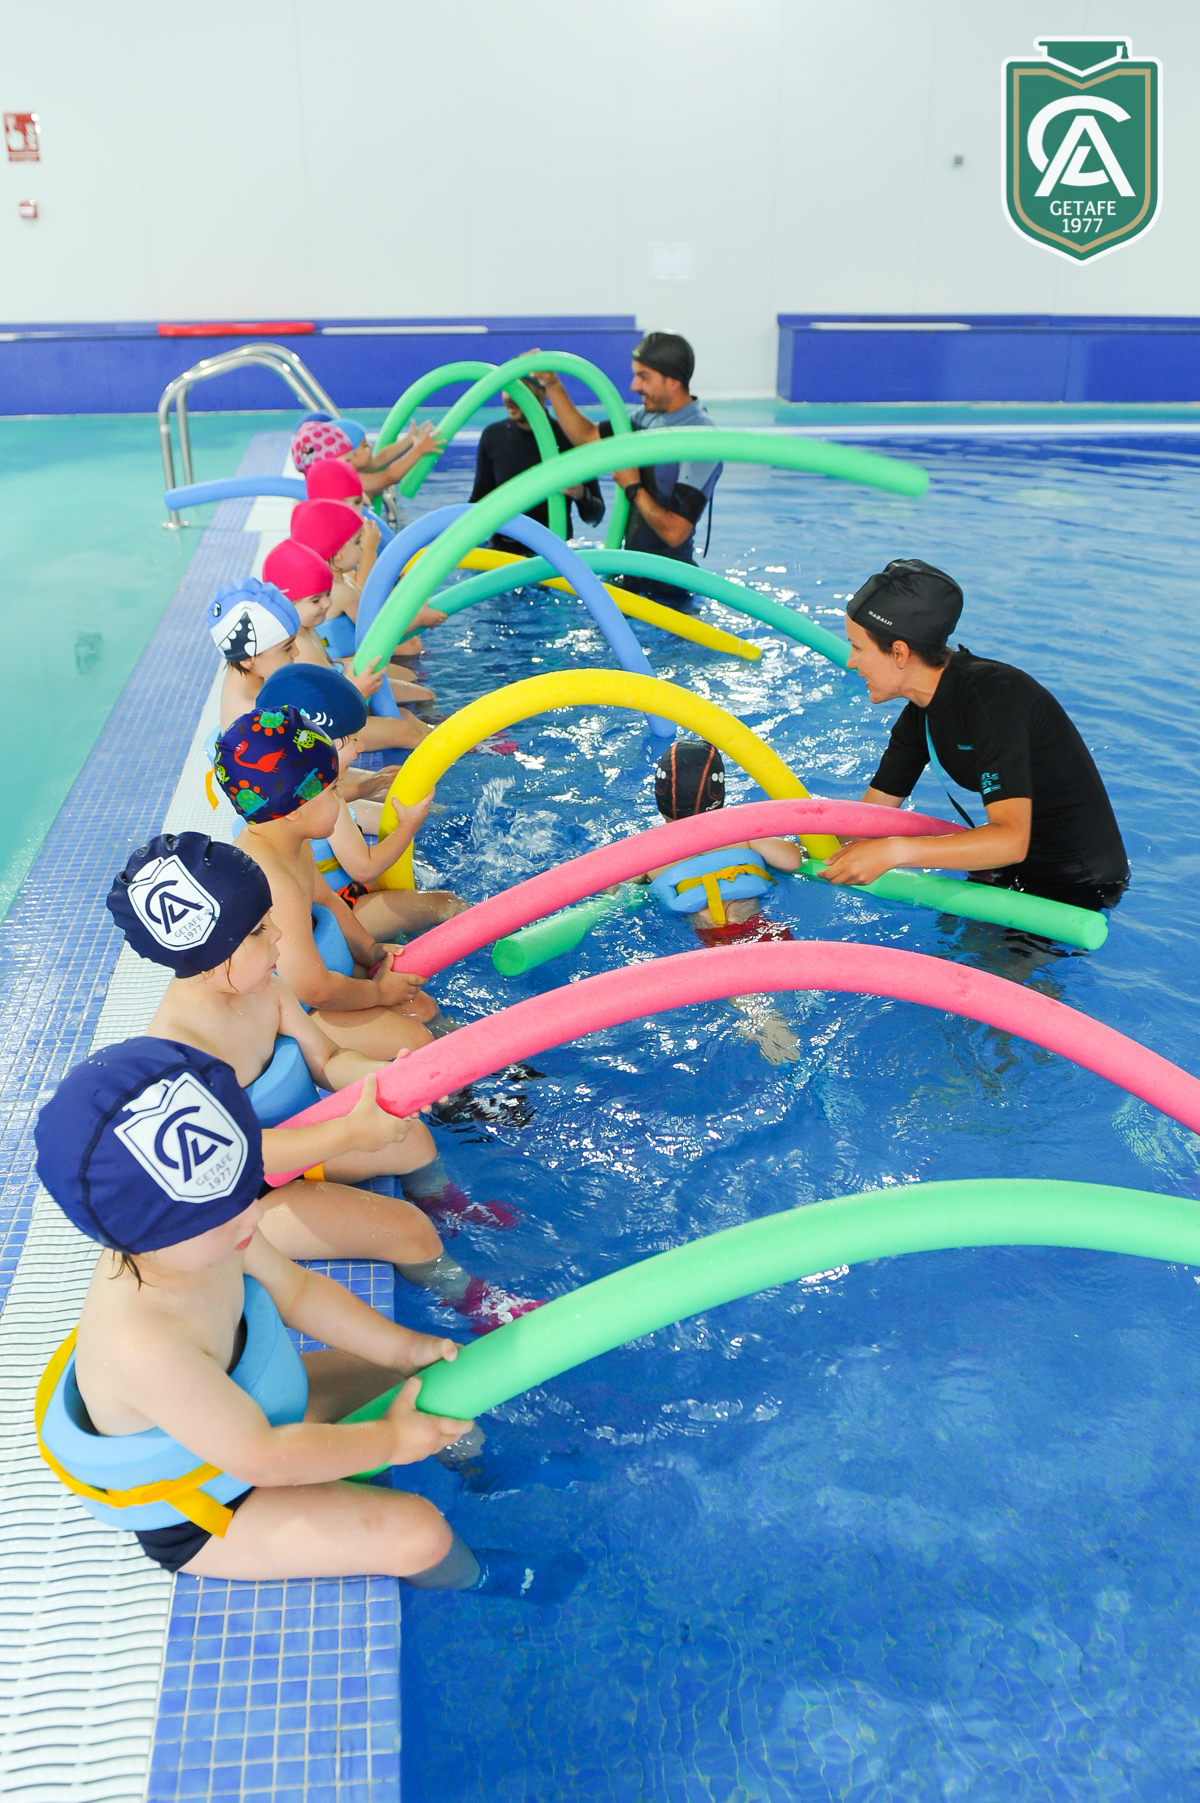 Clases de natación en la piscina del Colegio Los Ángeles de Getafe